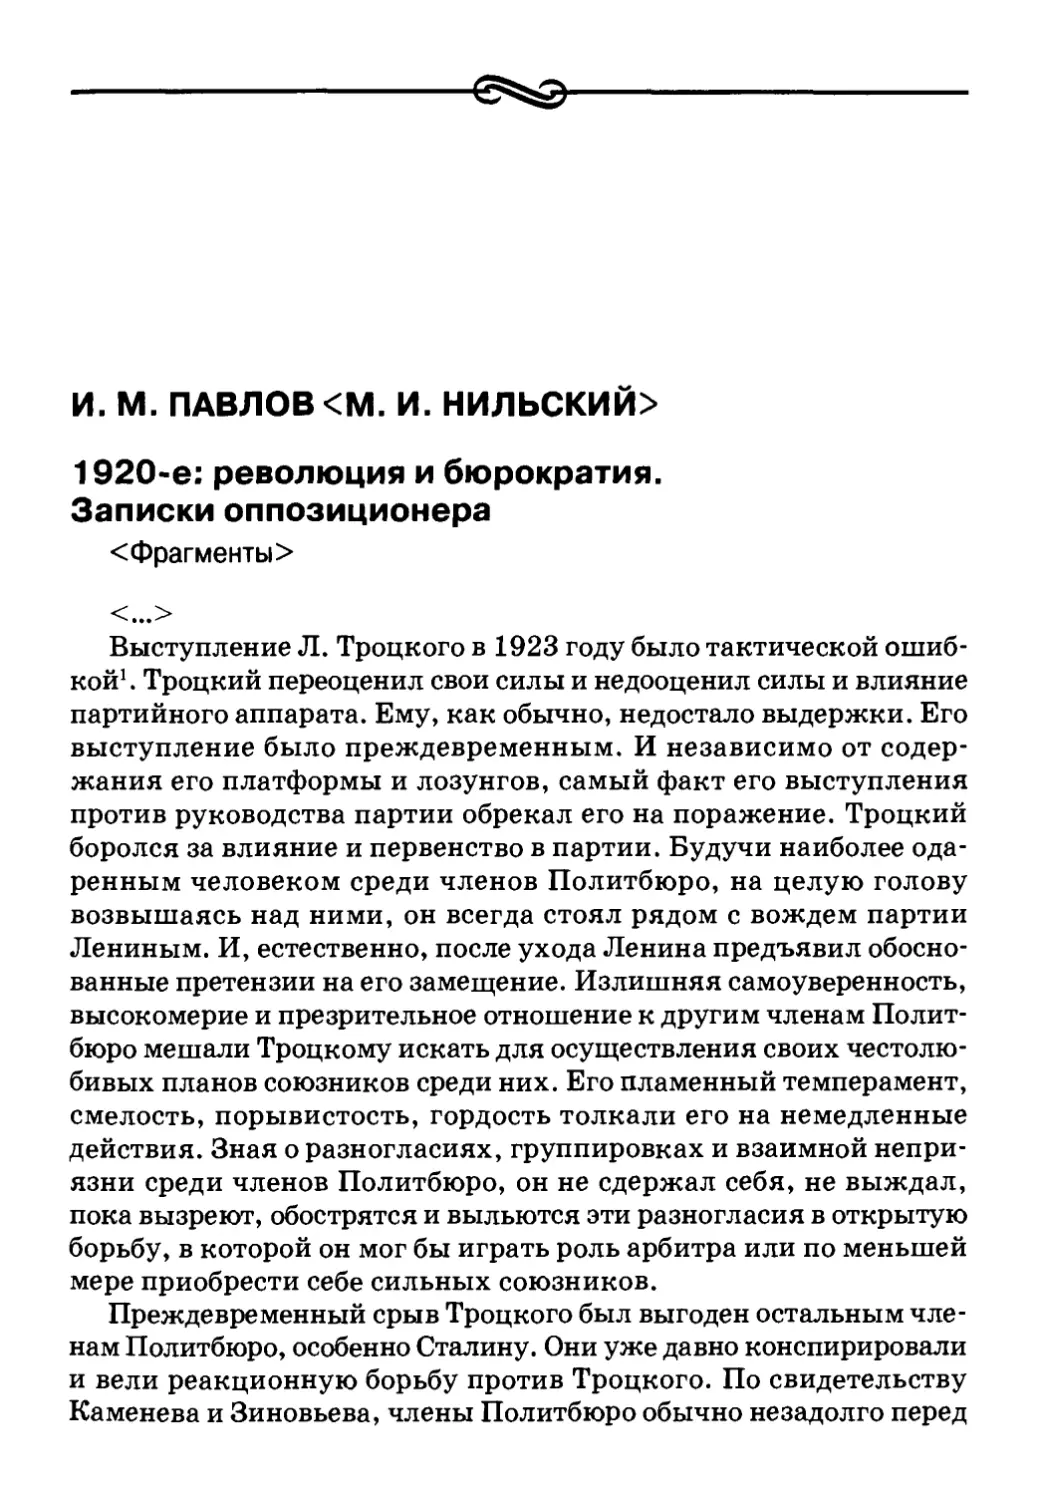 И. М. Павлов <М. И. Нильский> 1920-е: революция и бюрократия. Записки оппозиционера <Фрагменты>